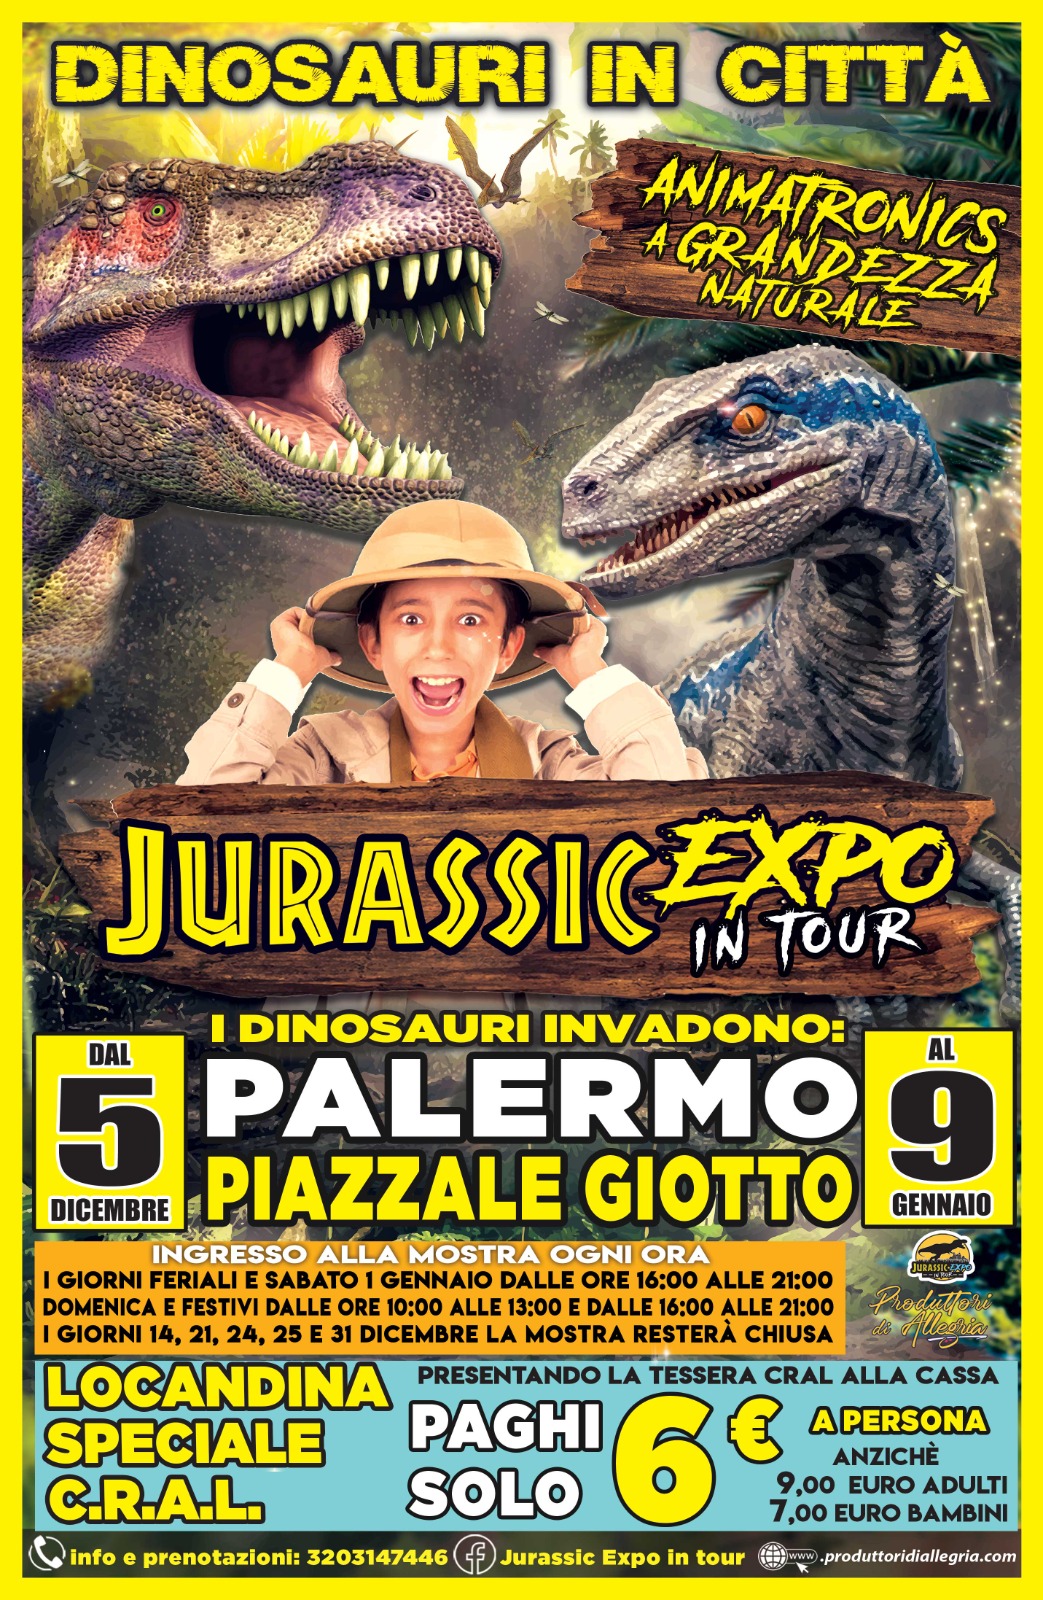 Jurassic Expo, News del 05/12/2021 - Cral Dipendenti Regione Sicilia,  sezione Palermo